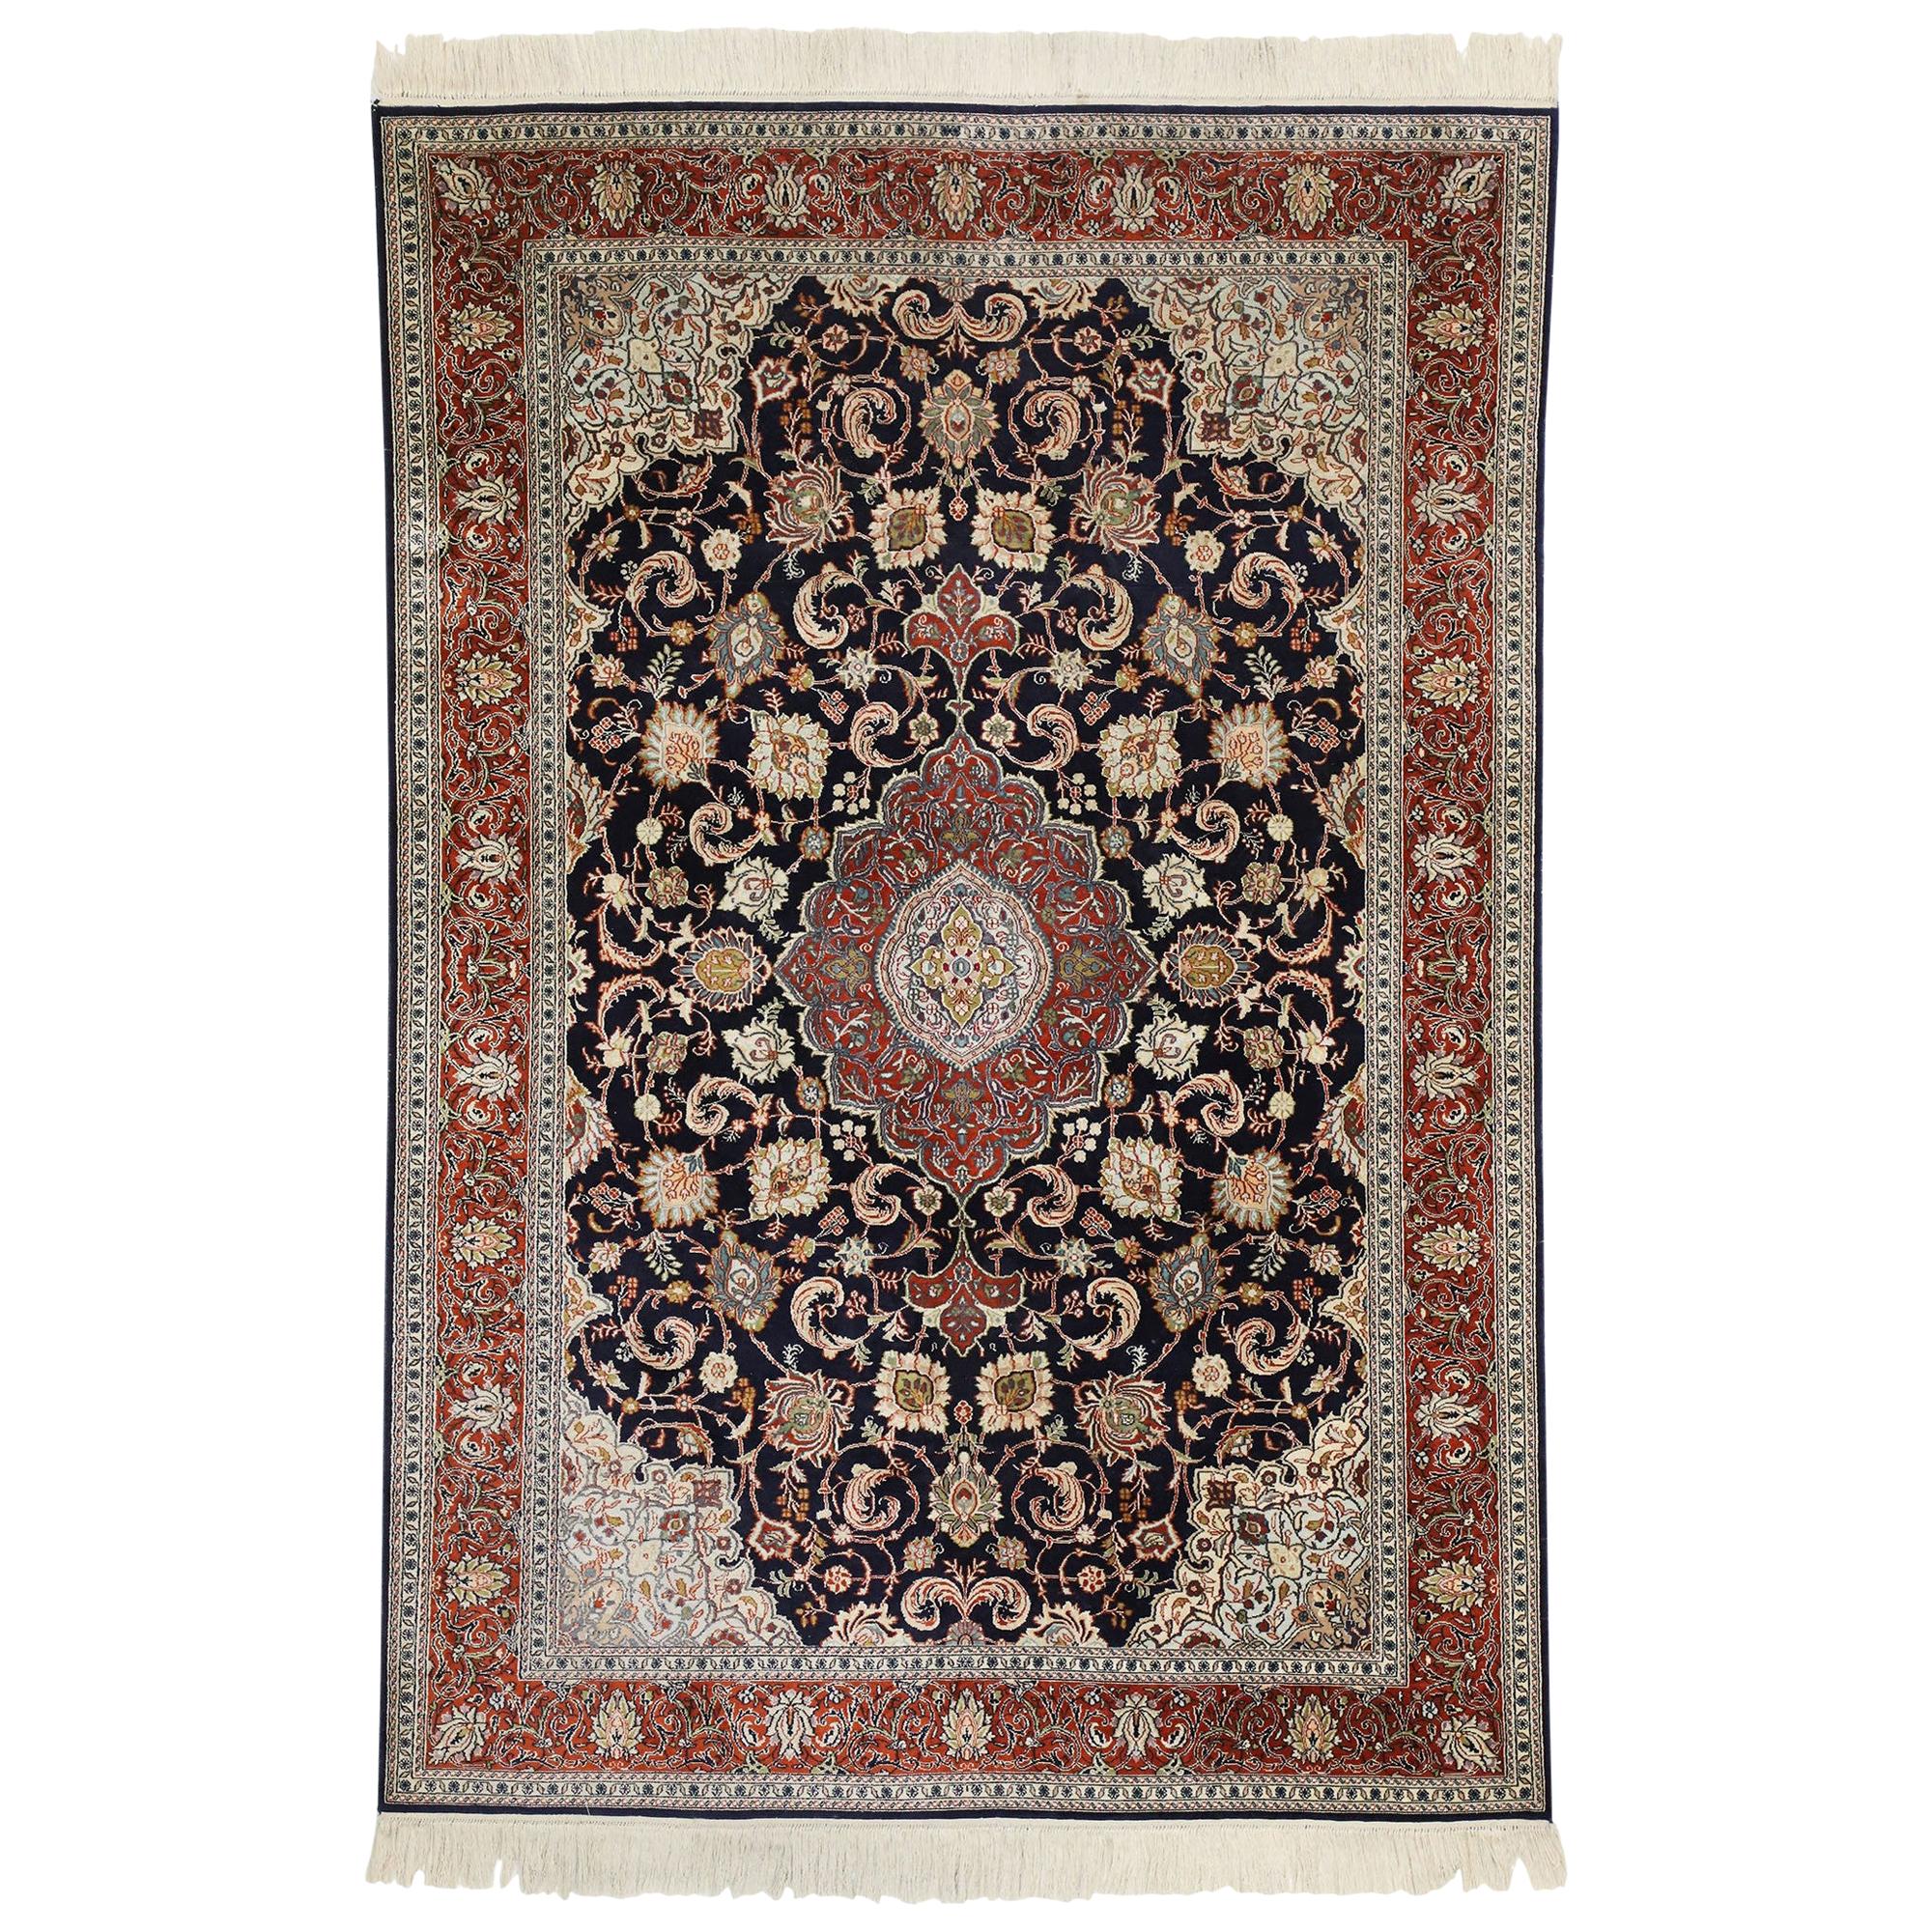 Vieux tapis persan en soie de Kashan avec style Renaissance hollandaise du vieux monde